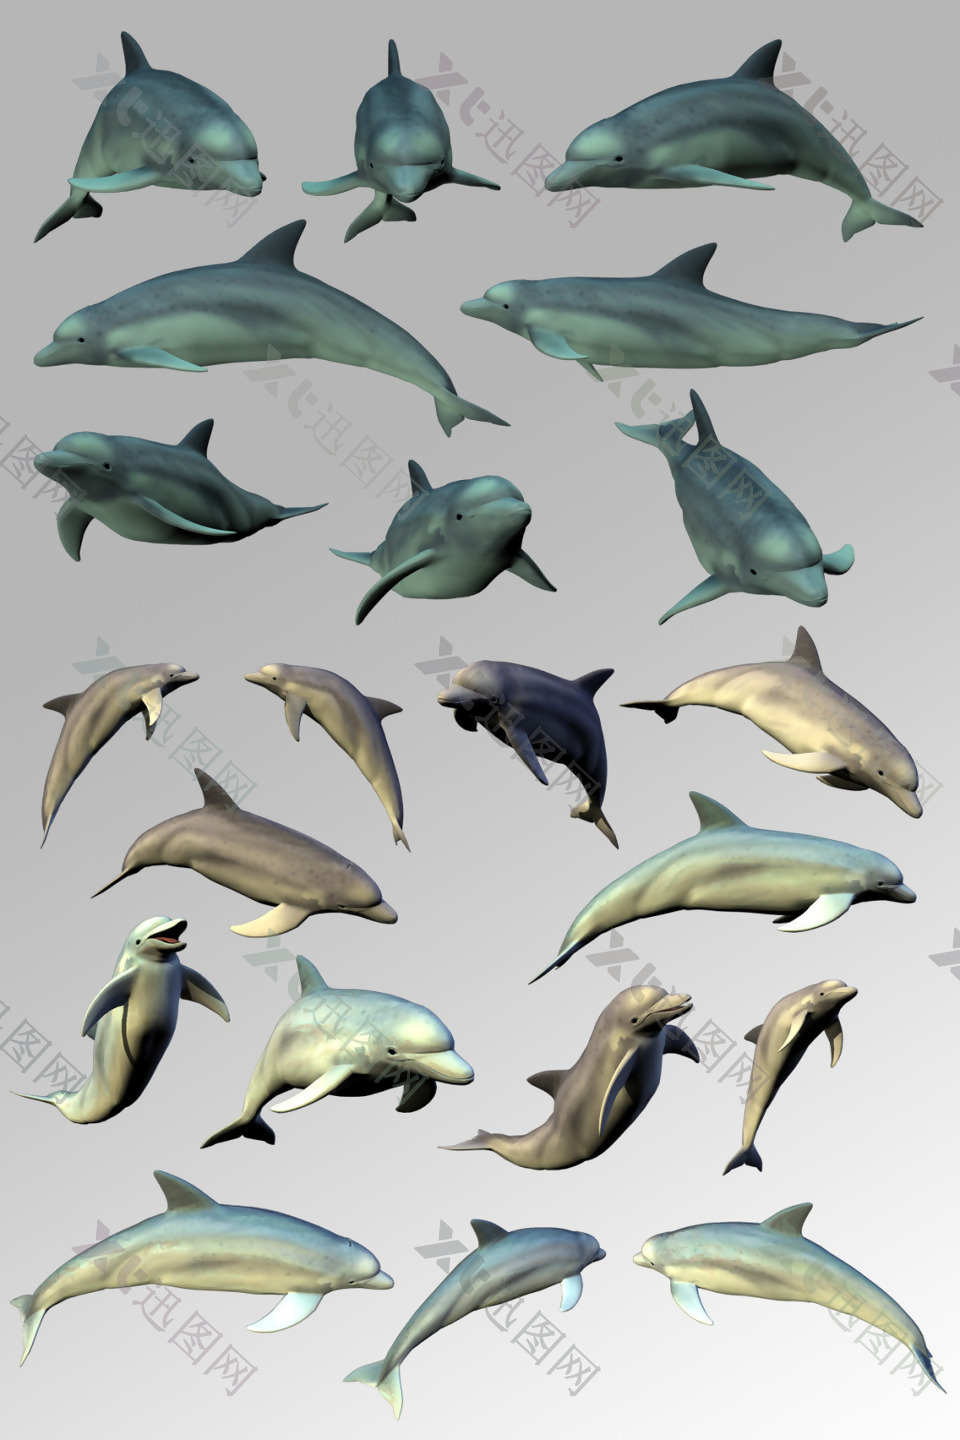 一组活泼可爱的海豚海洋生物元素素材